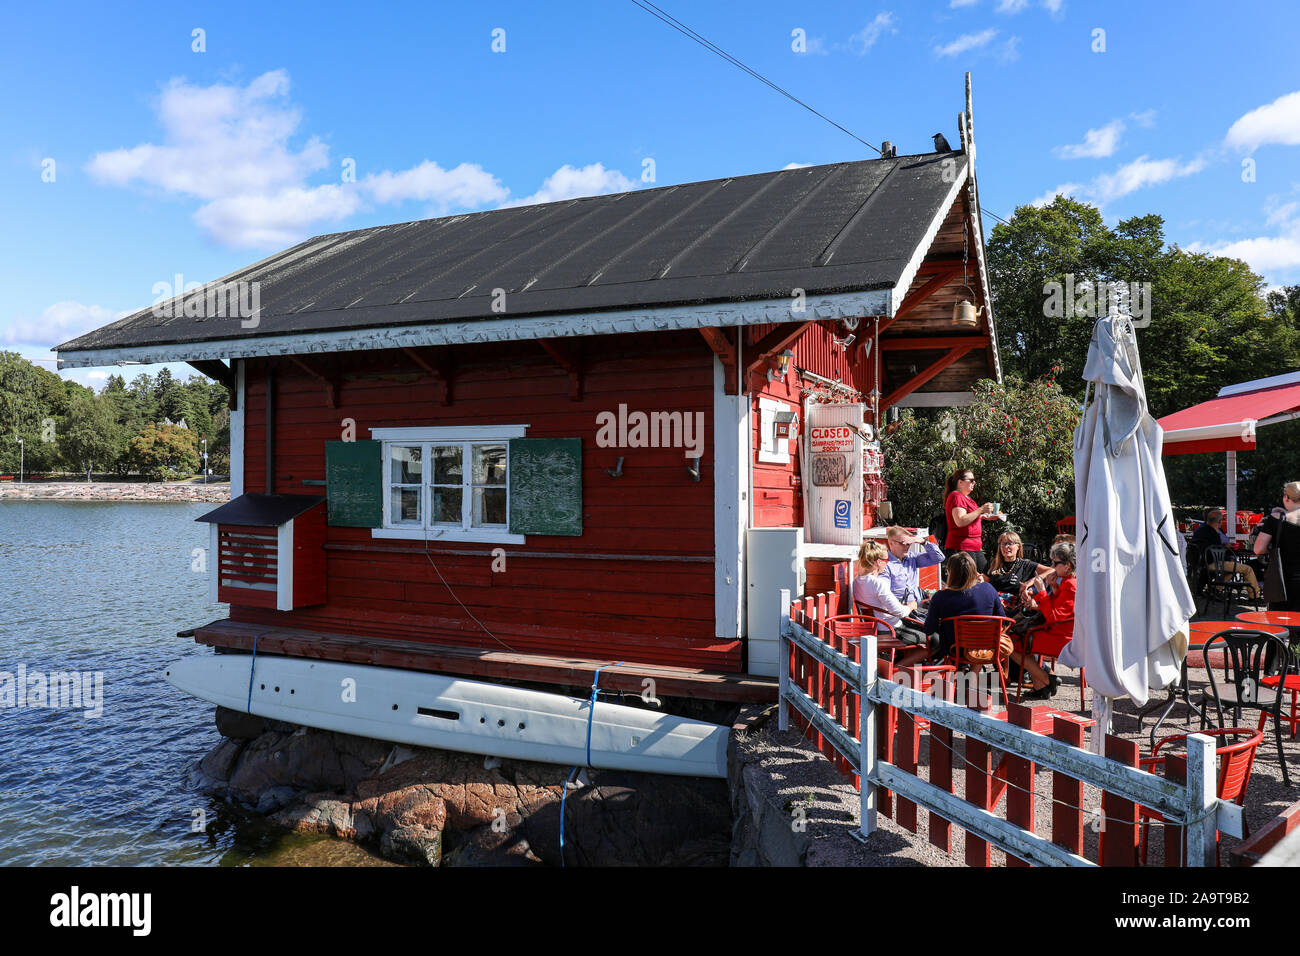 Cafe Regata, pequeña cafetería al aire libre por el mar, operando desde 120 años cabaña en Helsinki, Finlandia Foto de stock